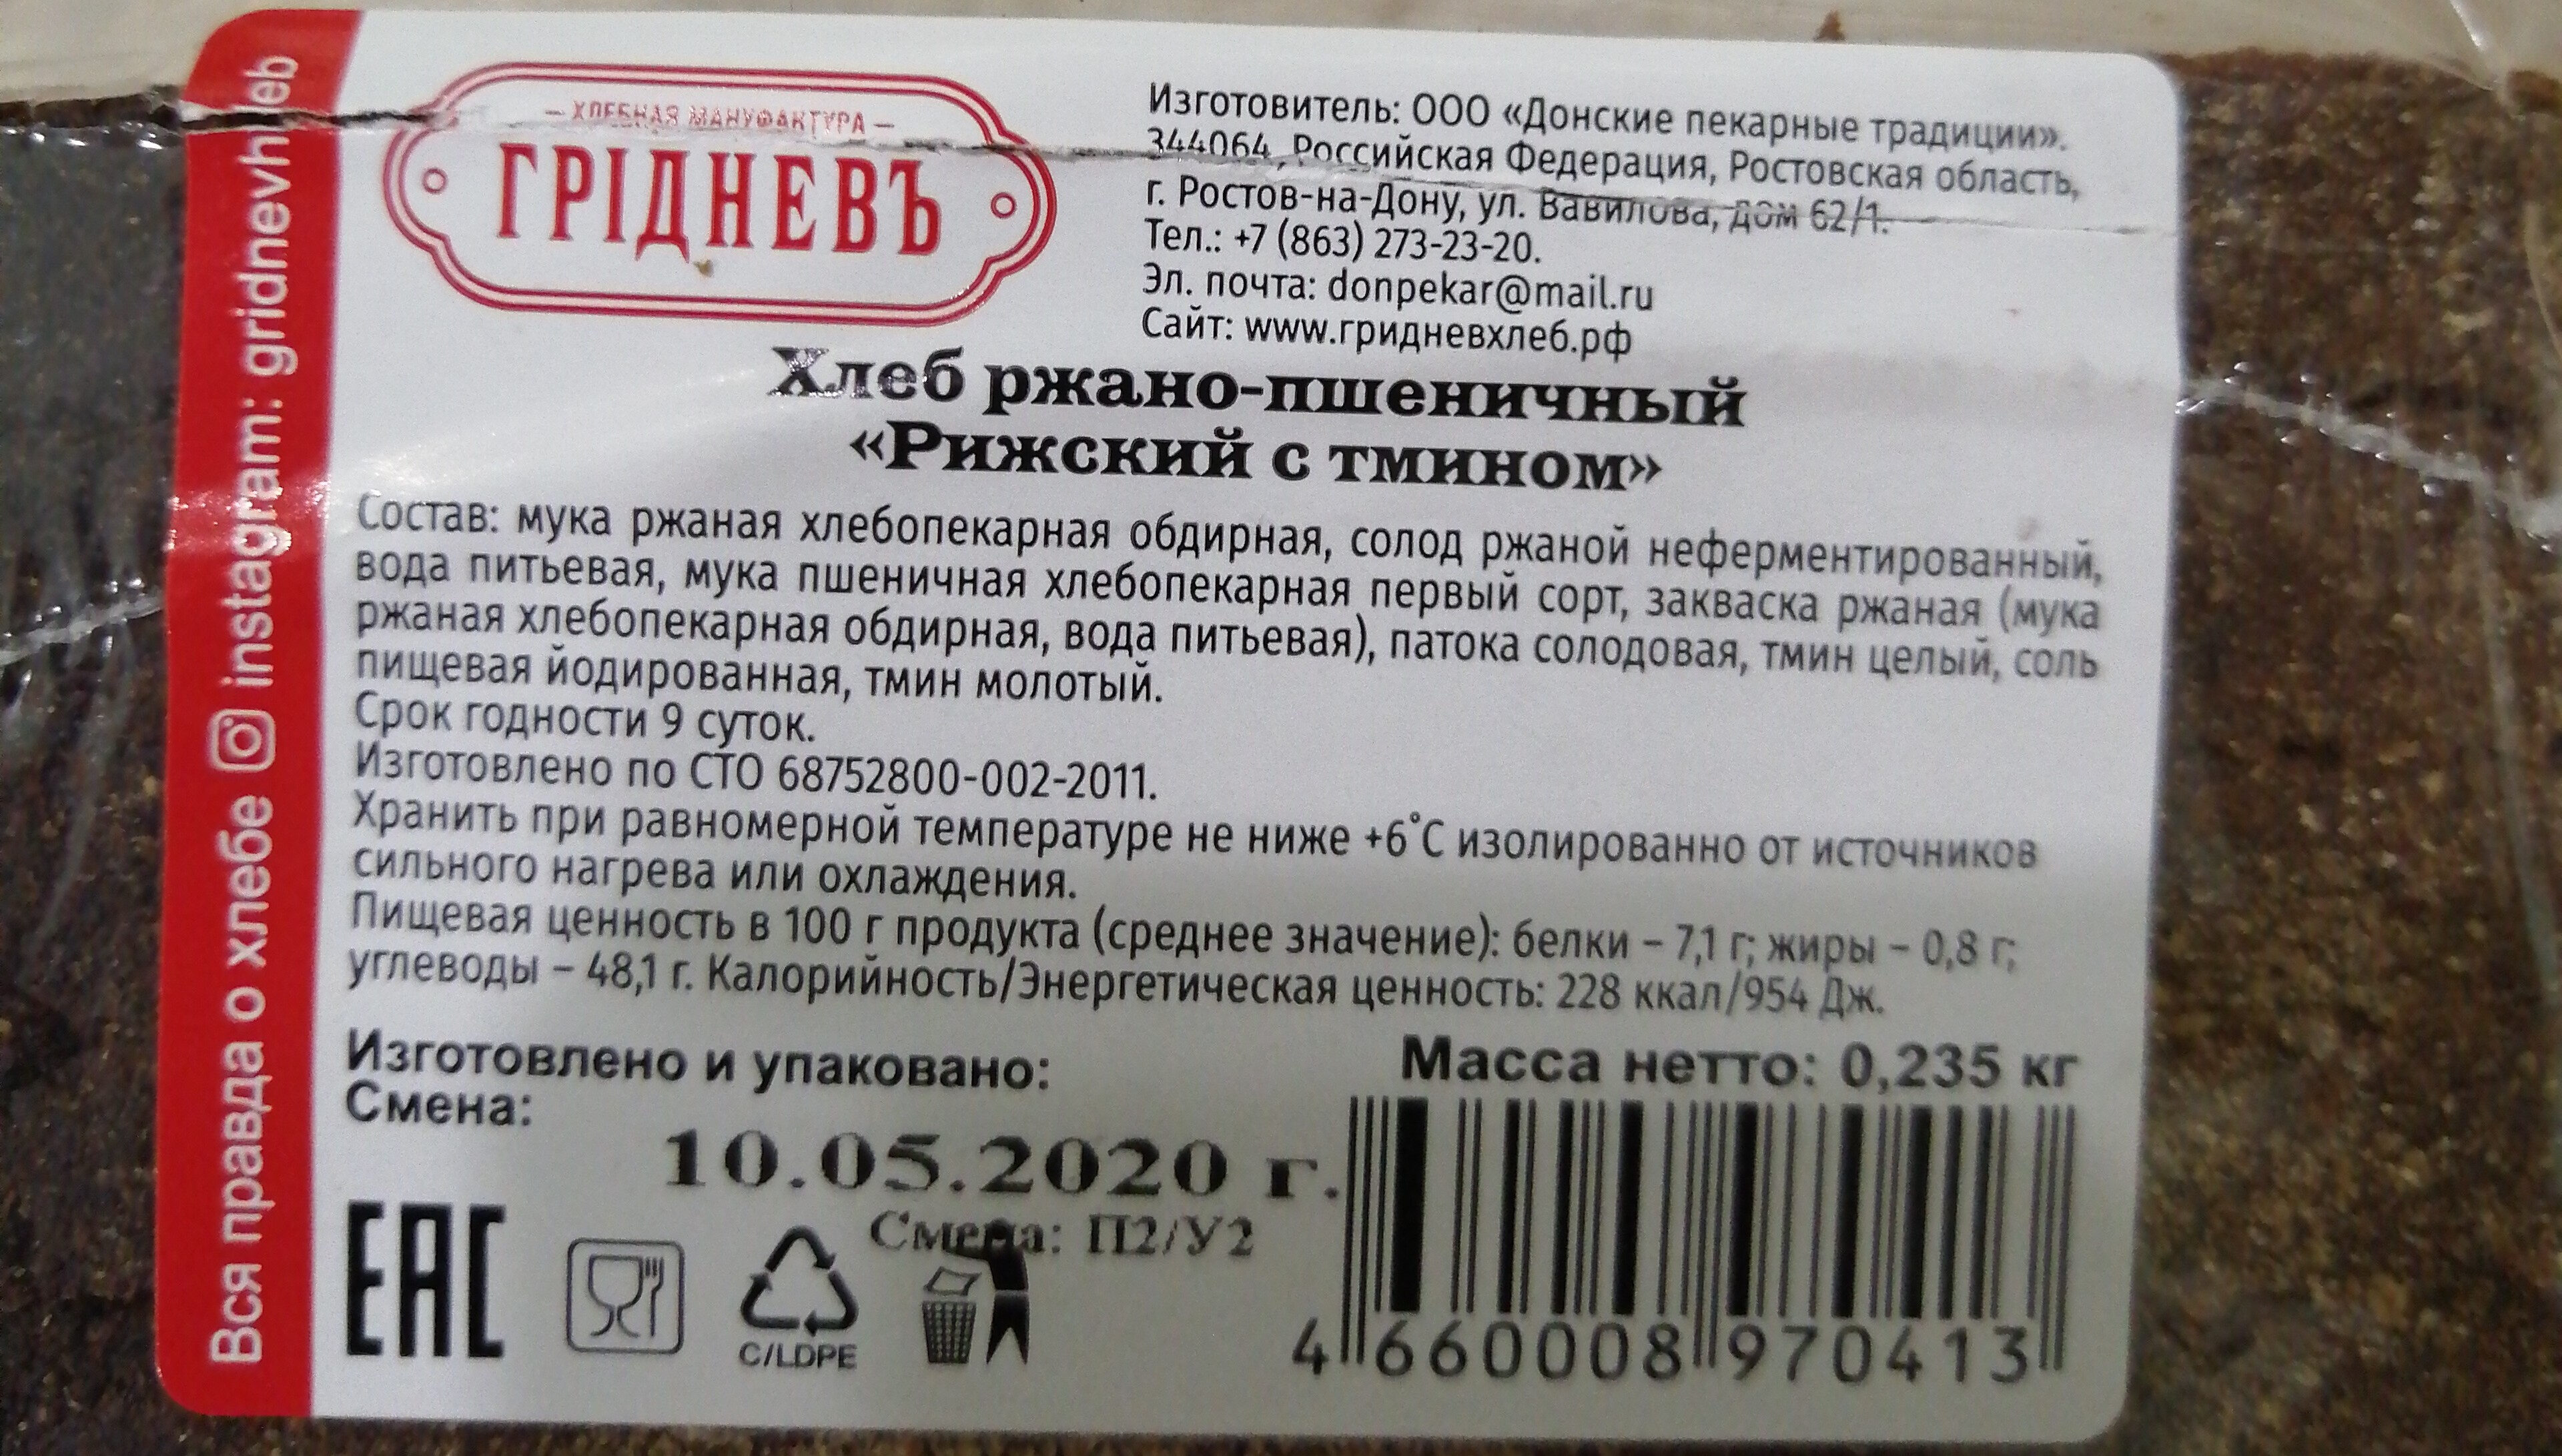 хлеб рижский с тмином - Ingredients - ru